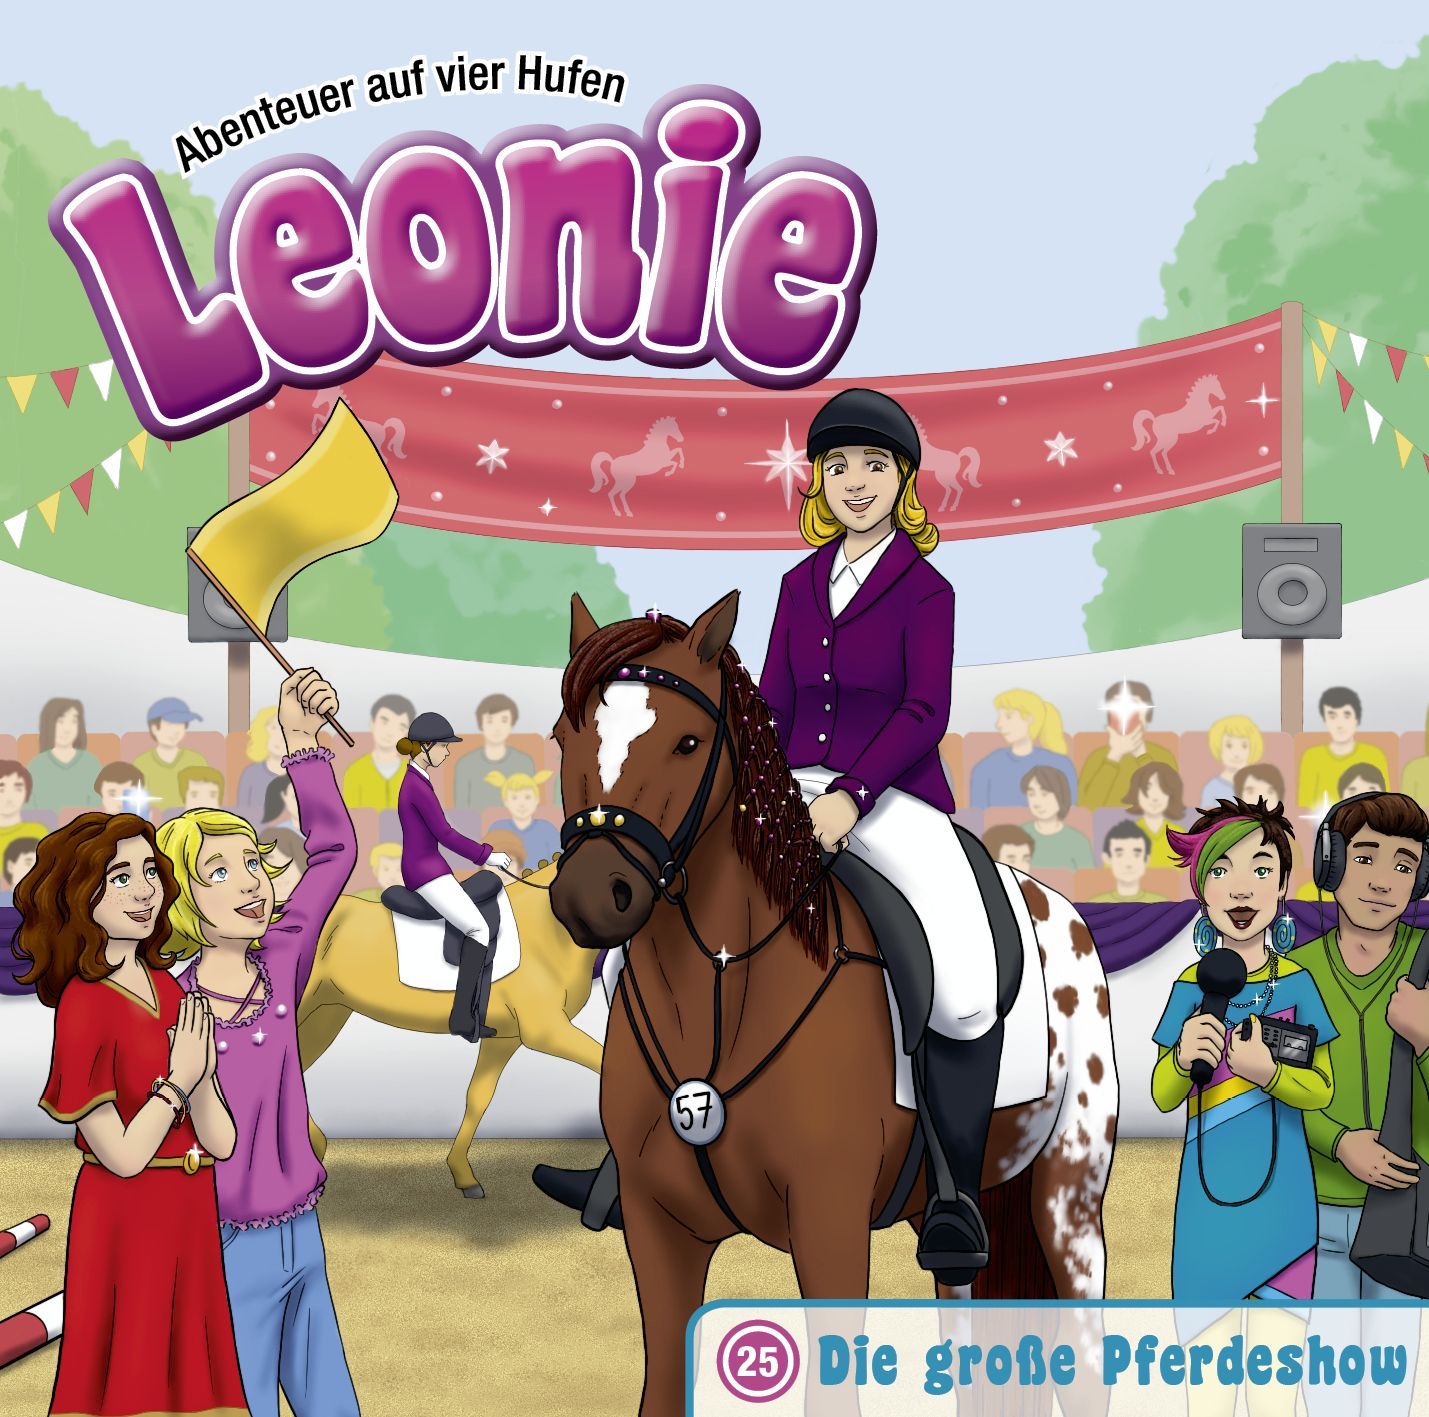 Leonie - Die große Pferdeshow (25)